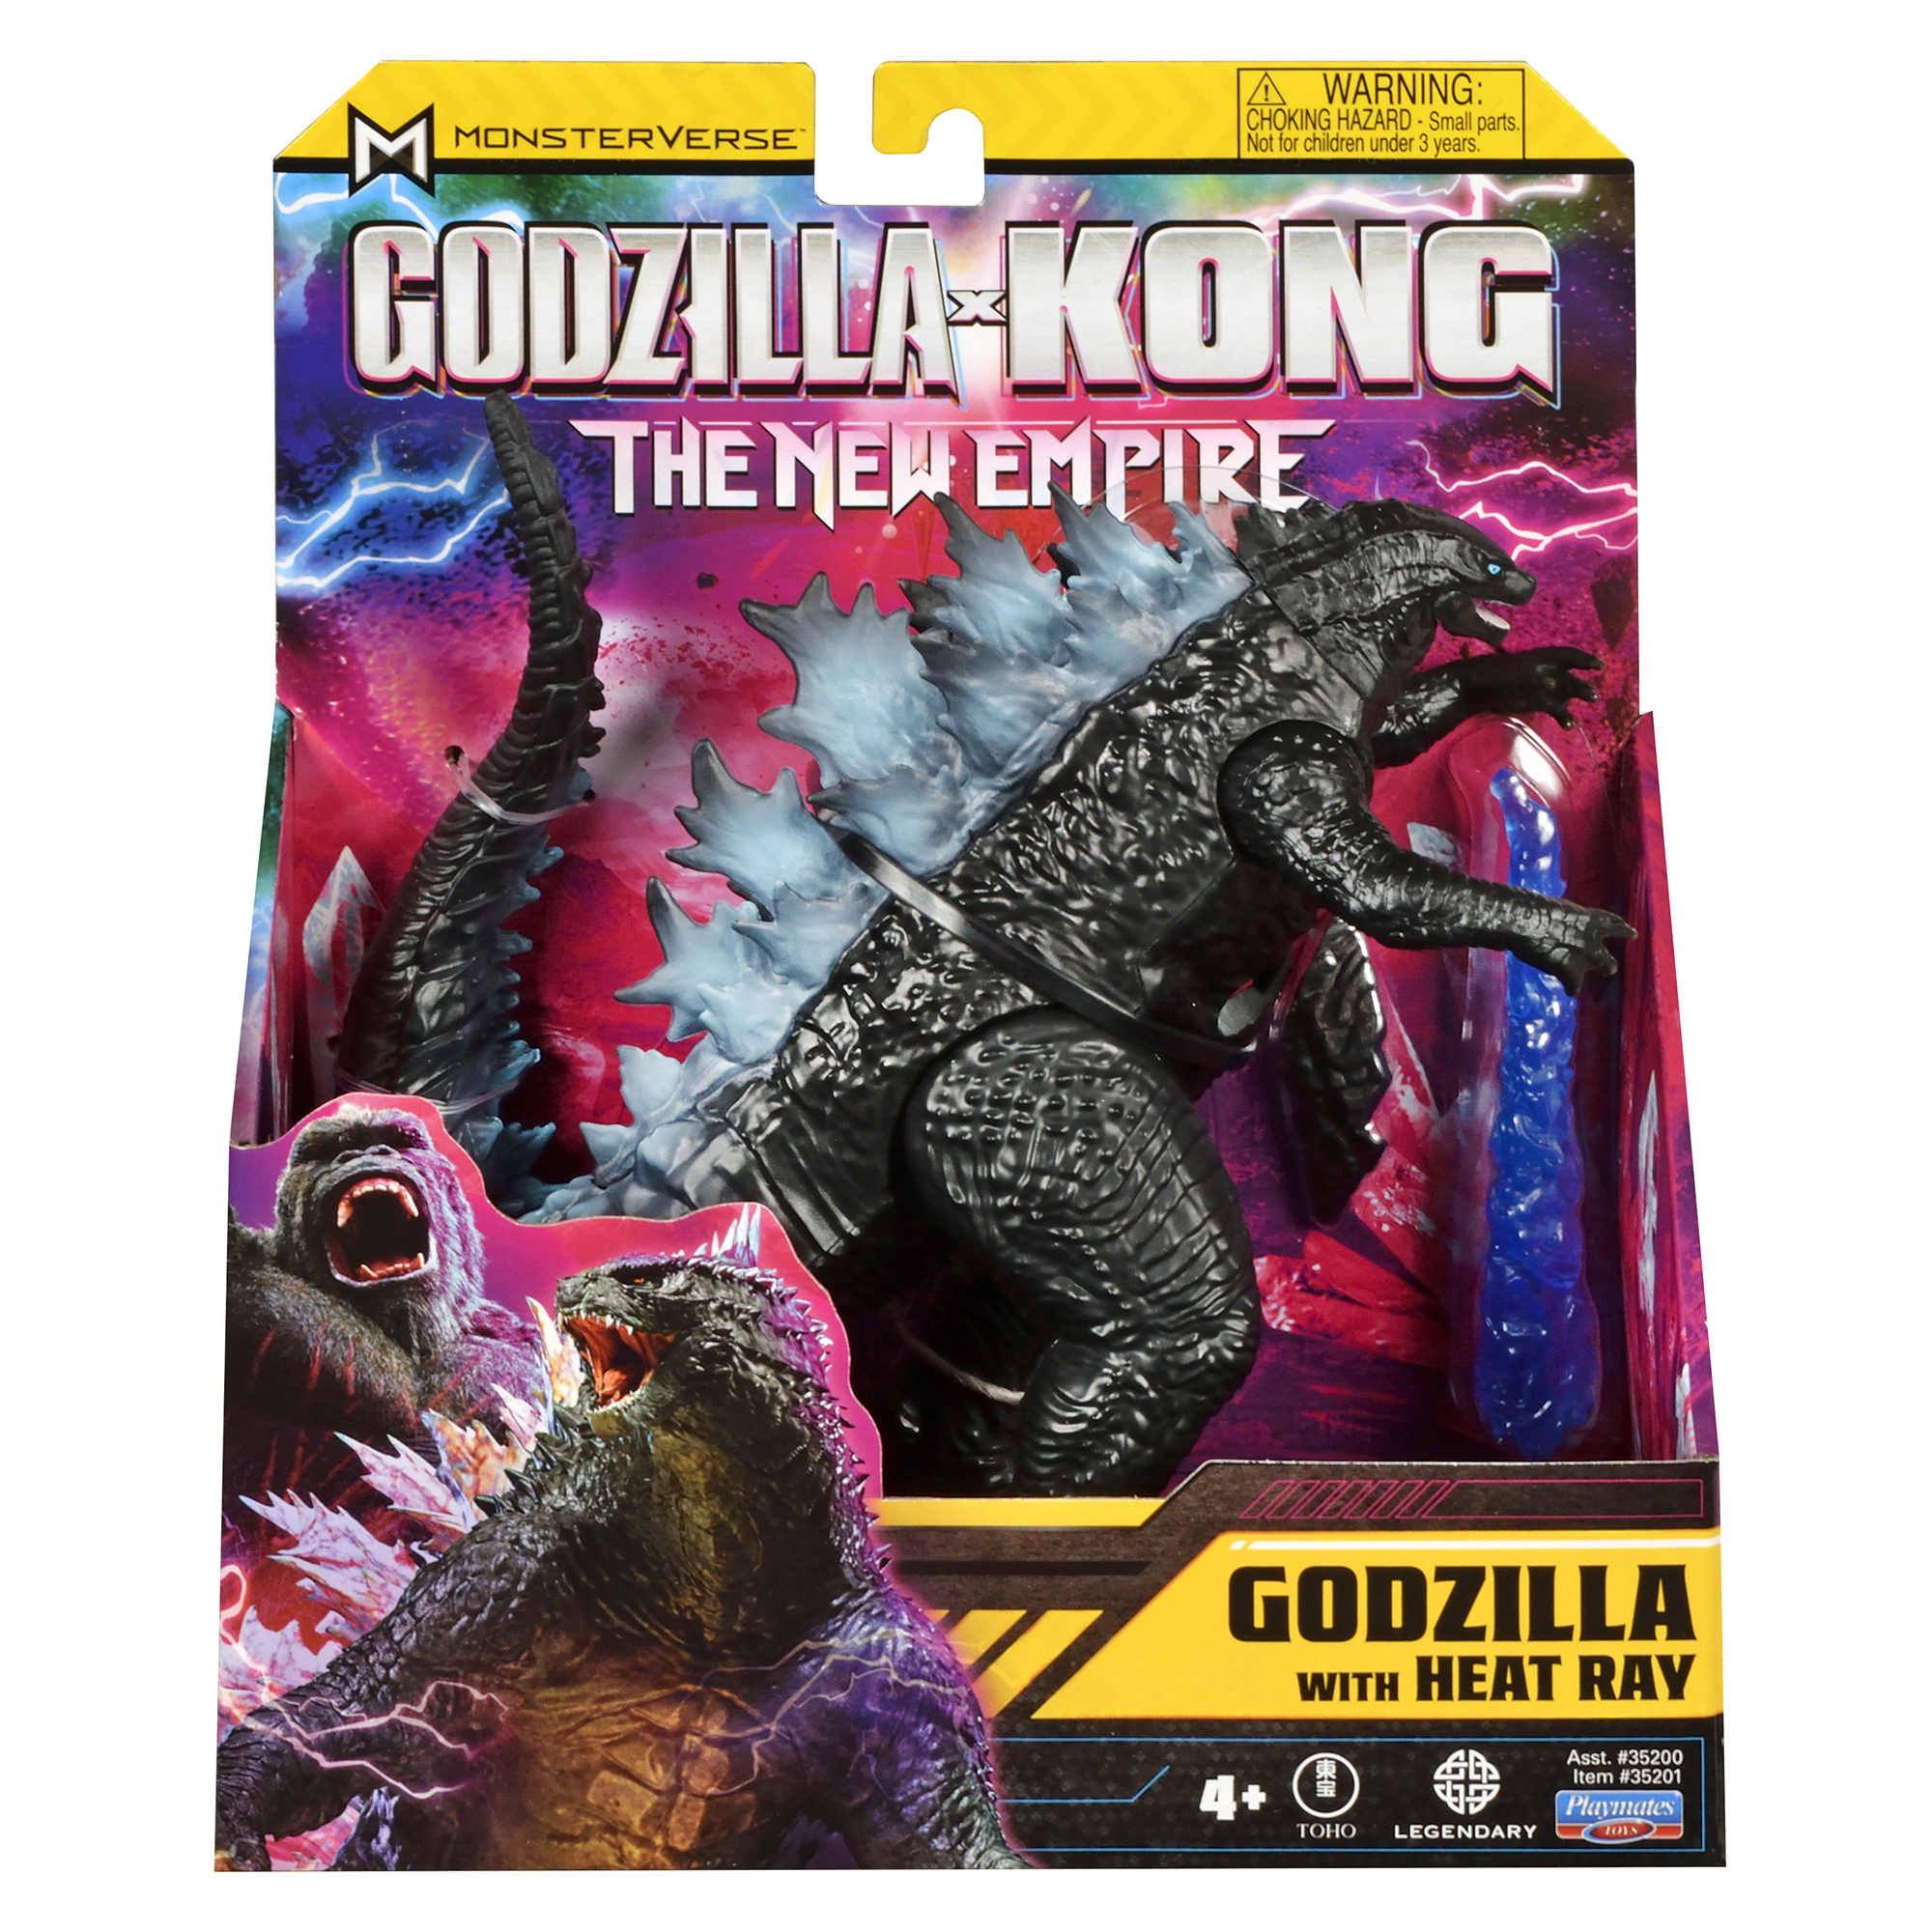 GODZILLA X KONG: THE NEW EMPIRE Toyline Official Info and Photos From  Playmates - Part 1, Godzilla - Toho